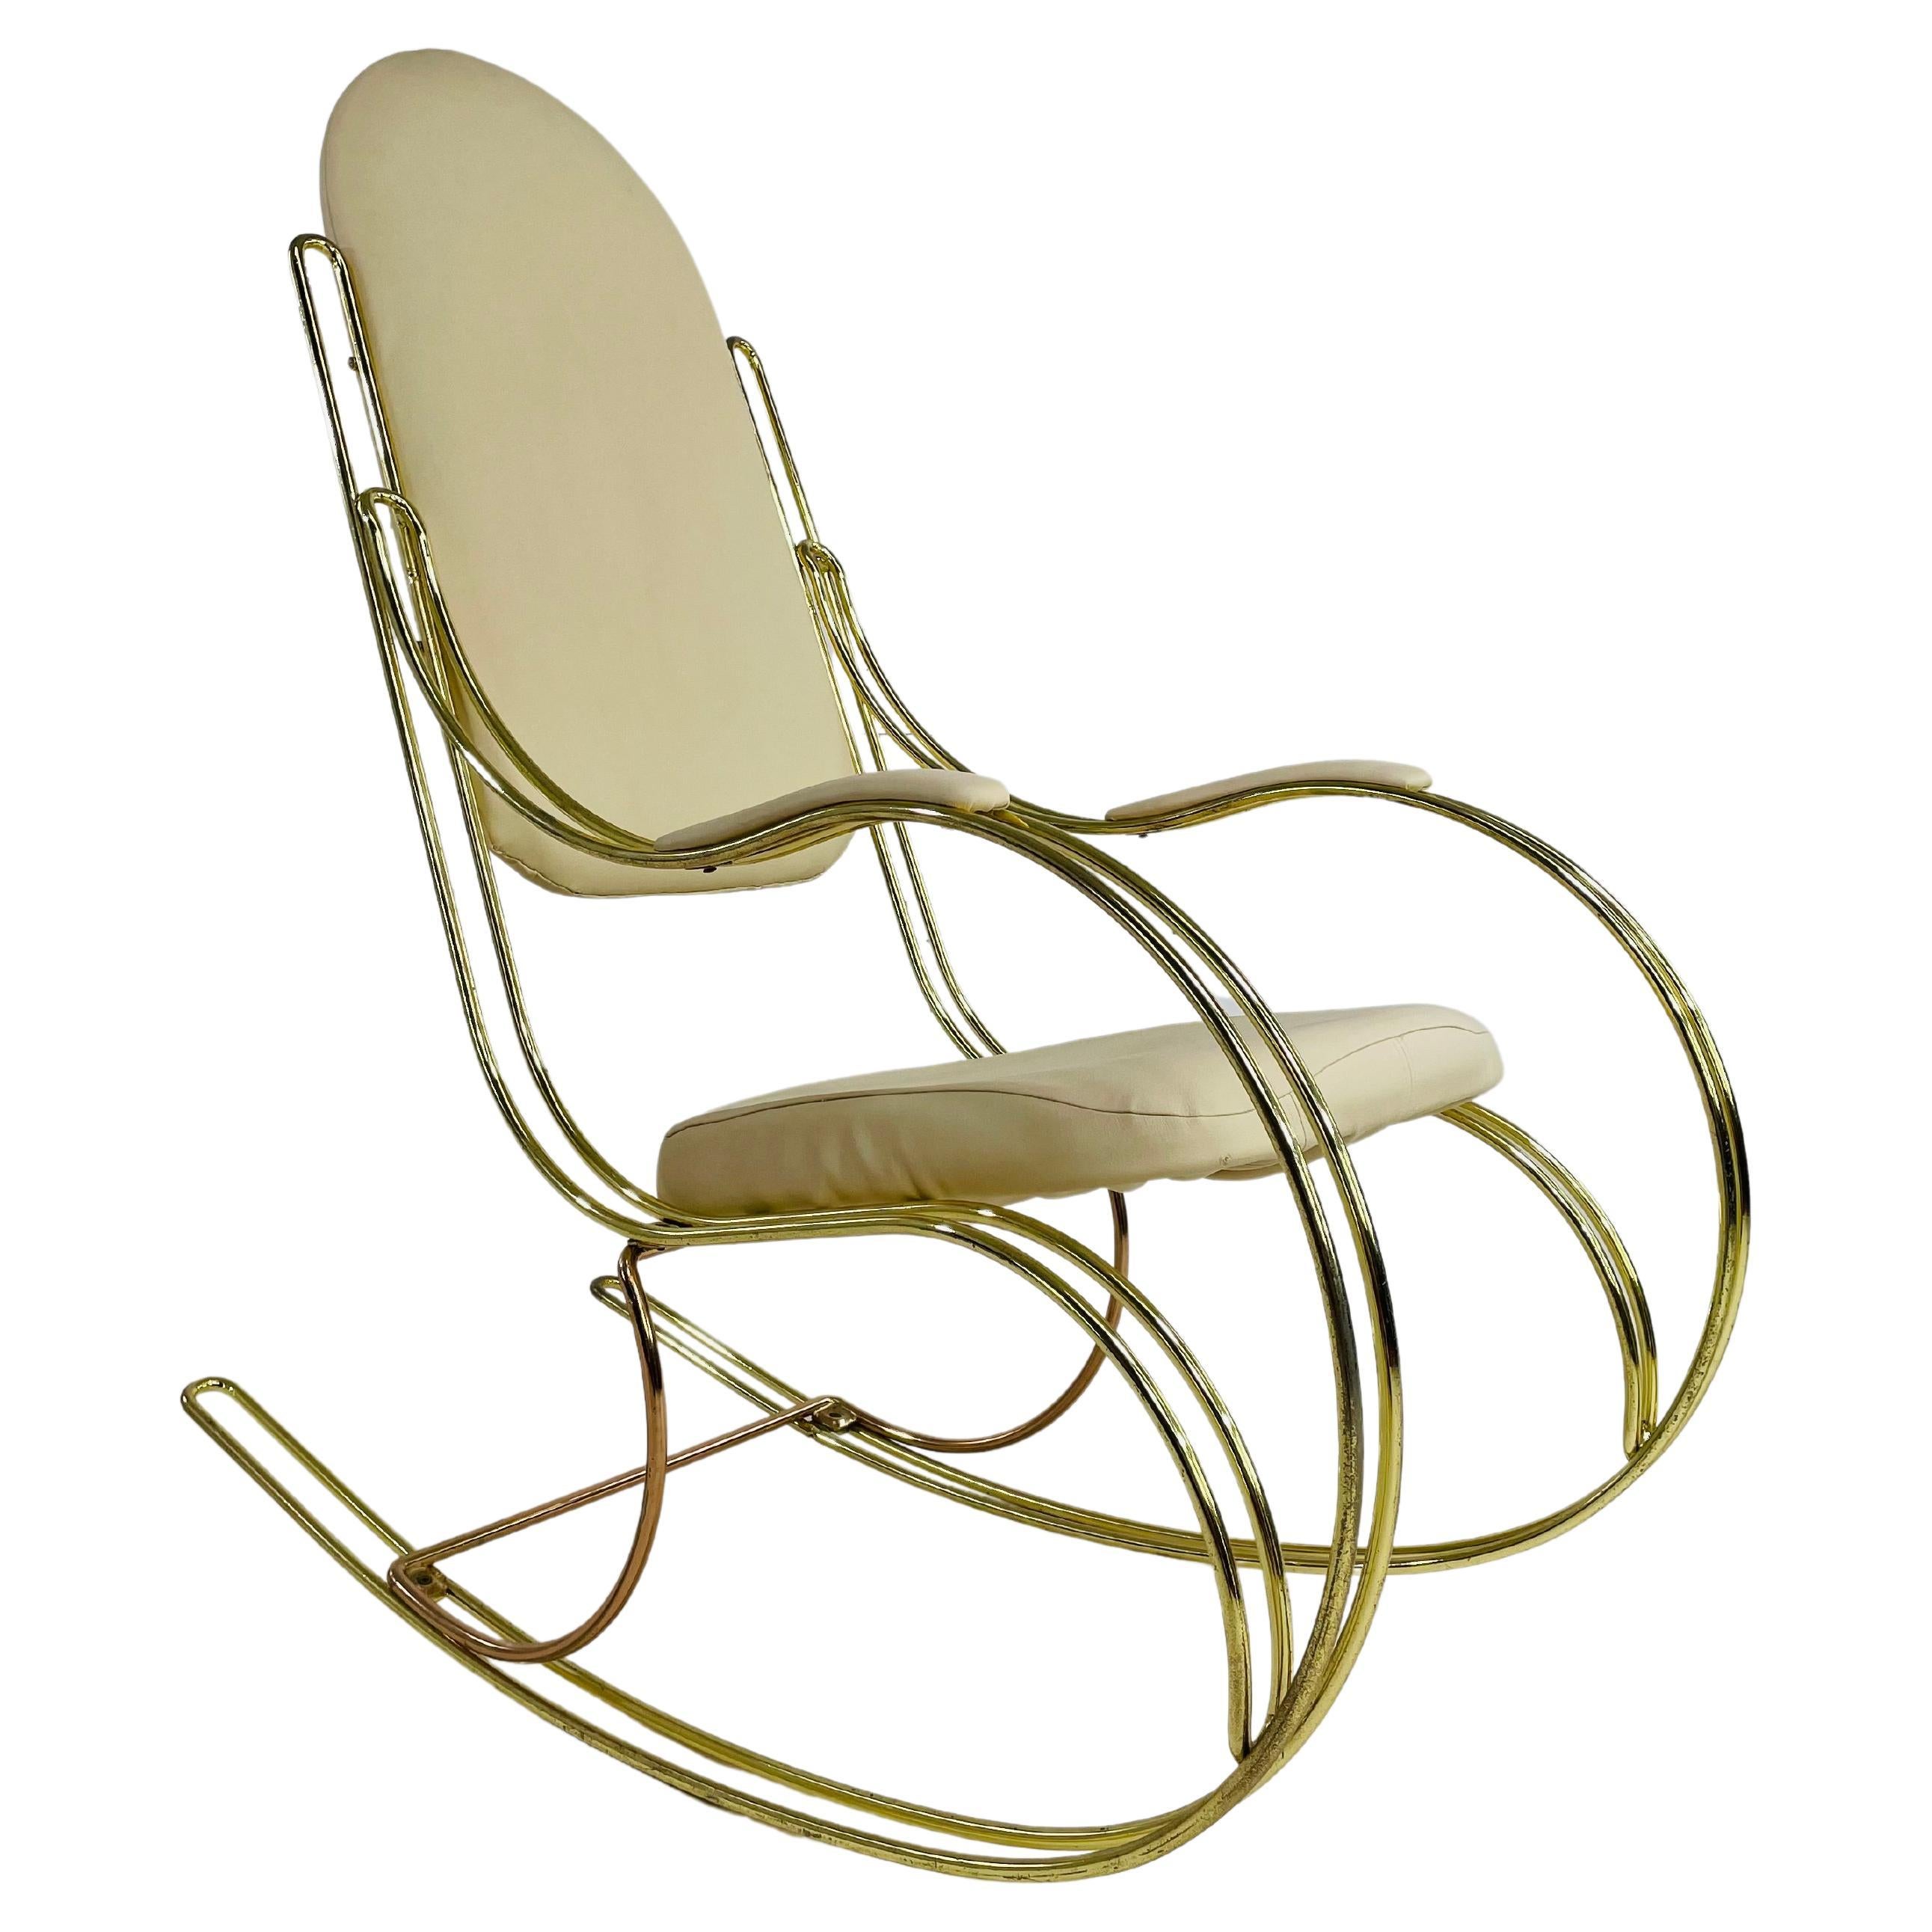 Rocking Chair aus Messing und beigefarbenem Kunstleder, 1960er-1970er Jahre